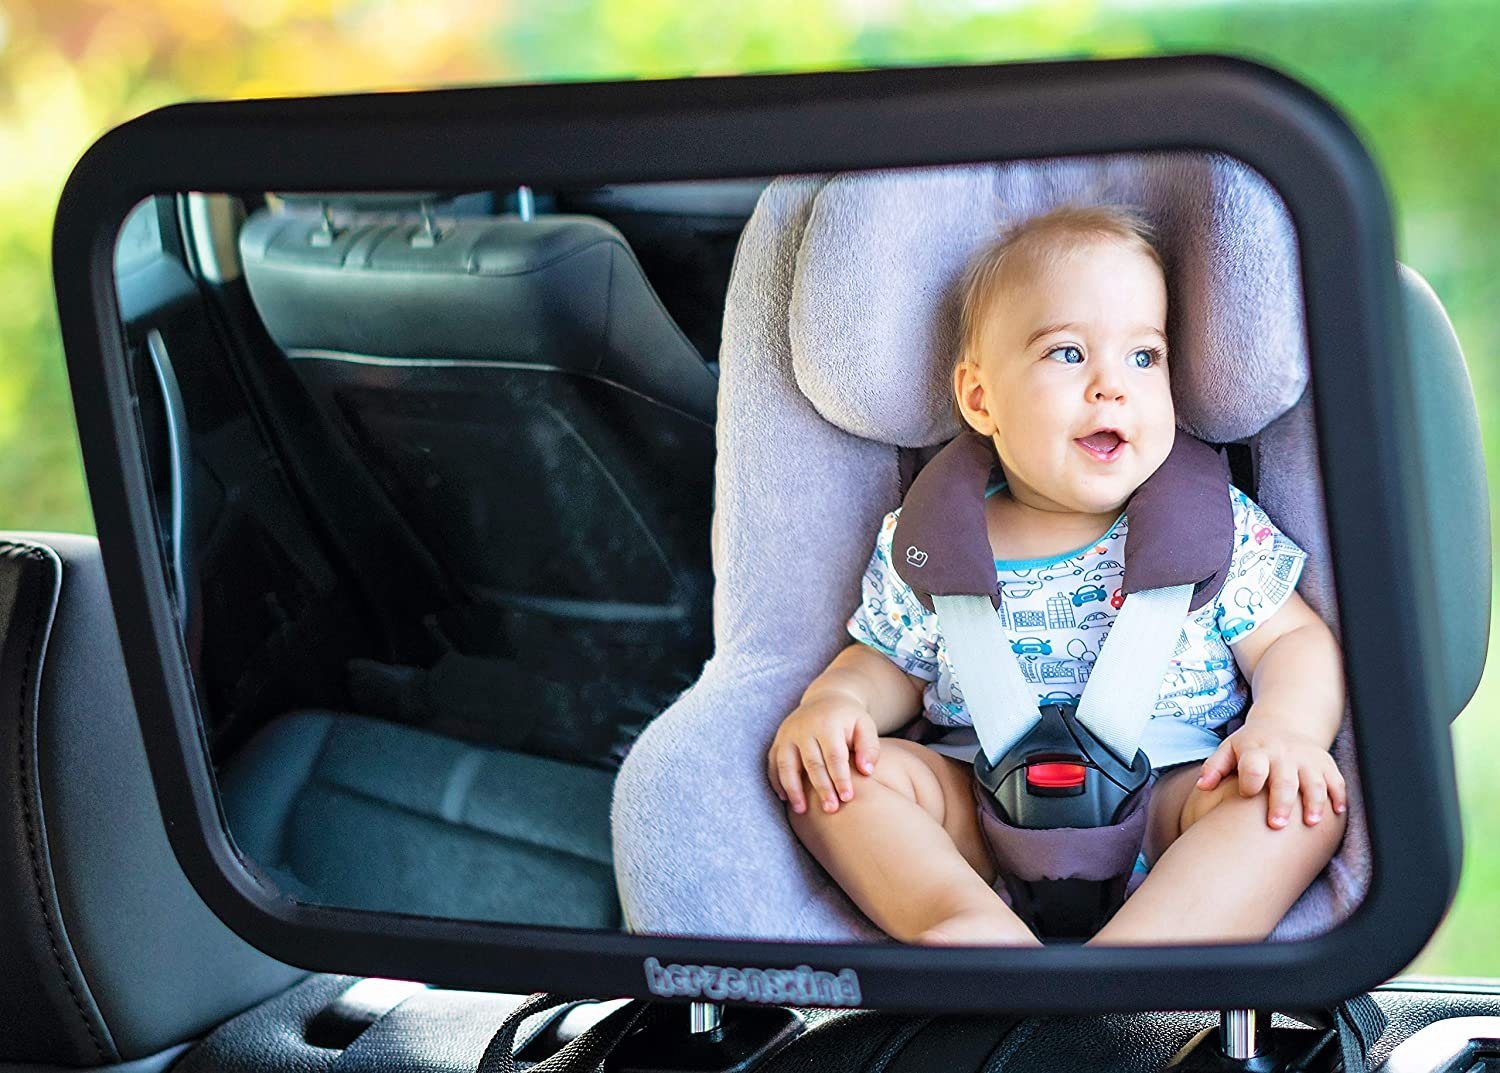 CARACHOME Rücksitzspiegel,Spiegel Auto Baby,Einstellbar 360 Grad drehbar,100% bruchsicher,Schnellinstallation,schwenkbar/neigbar,Ruecksitzspiegel für Babys 